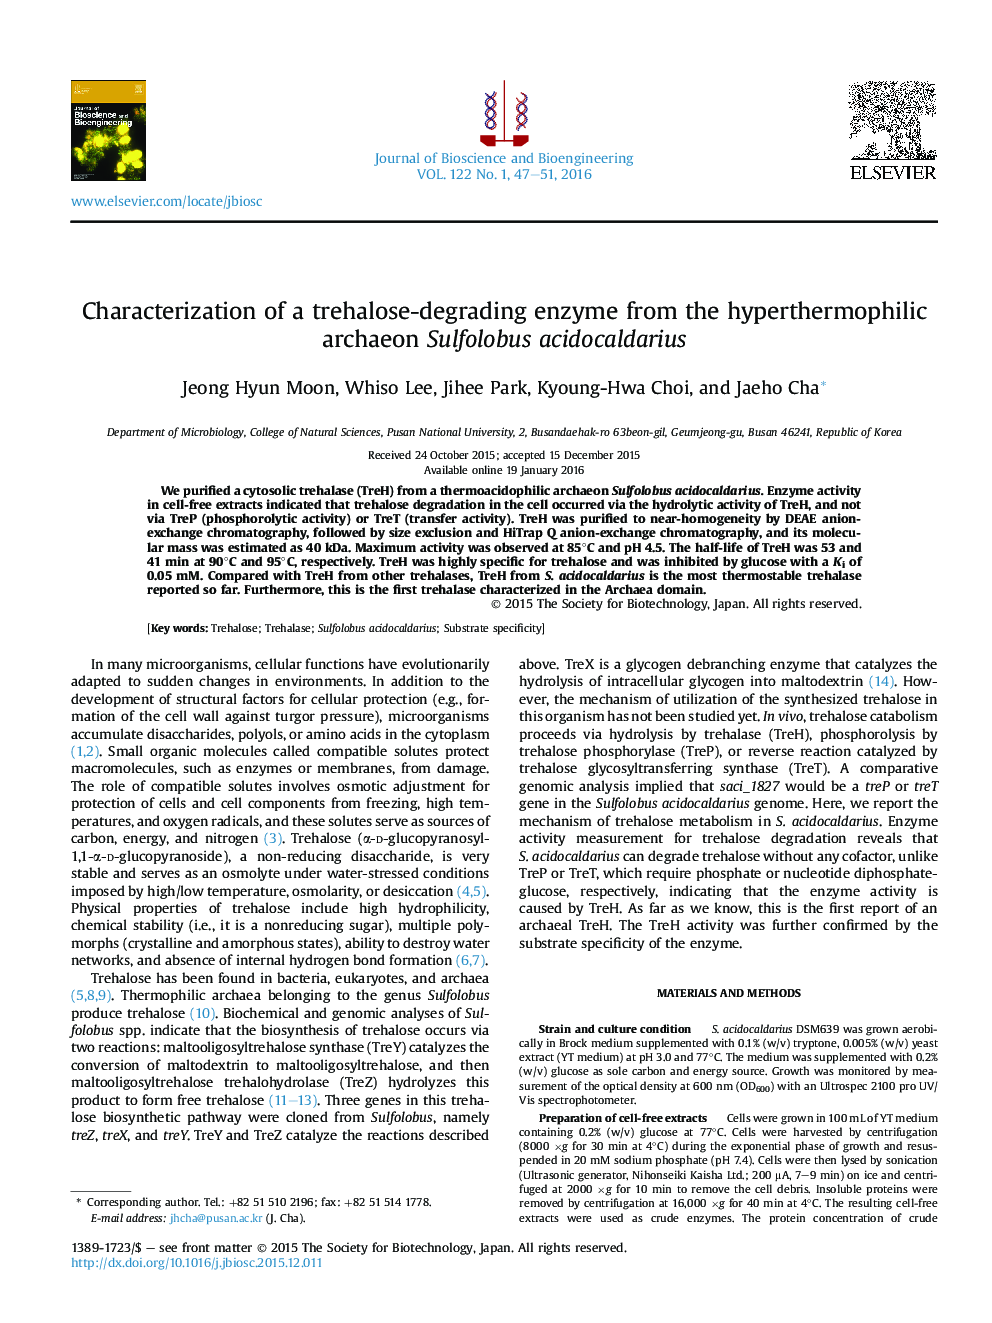 ویژگی های آنزیم تجزیه کننده تریگالوز از قارچ Hyperthermophilic Sulfolobus acidocaldarius